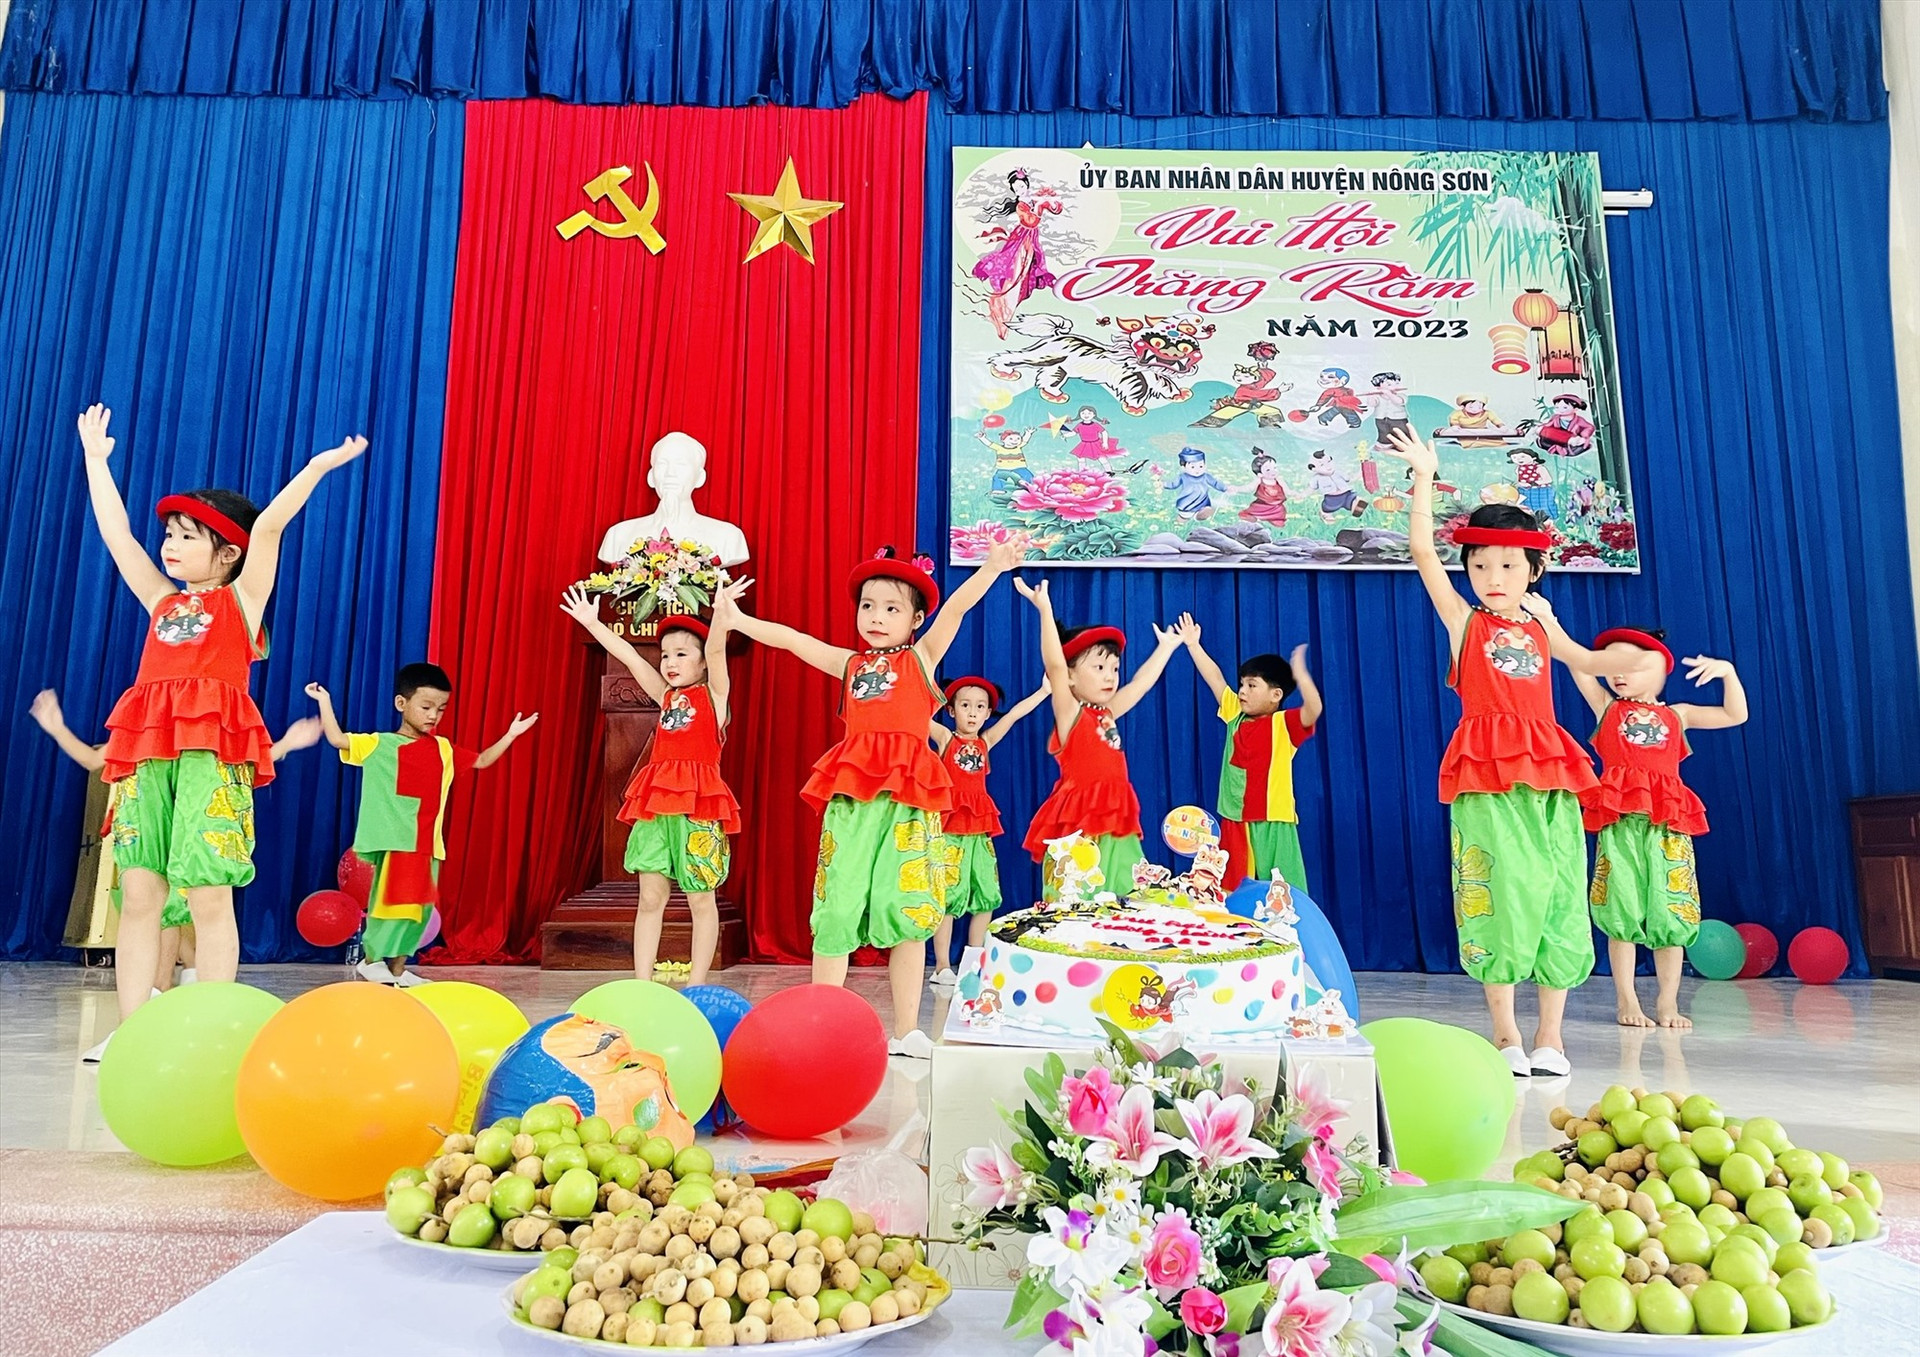 Một tiết mục văn nghệ trong chương trình “Vui hội trăng rằm” do UBND huyện Nông Sơn tổ chức. Ảnh: MINH TÂM